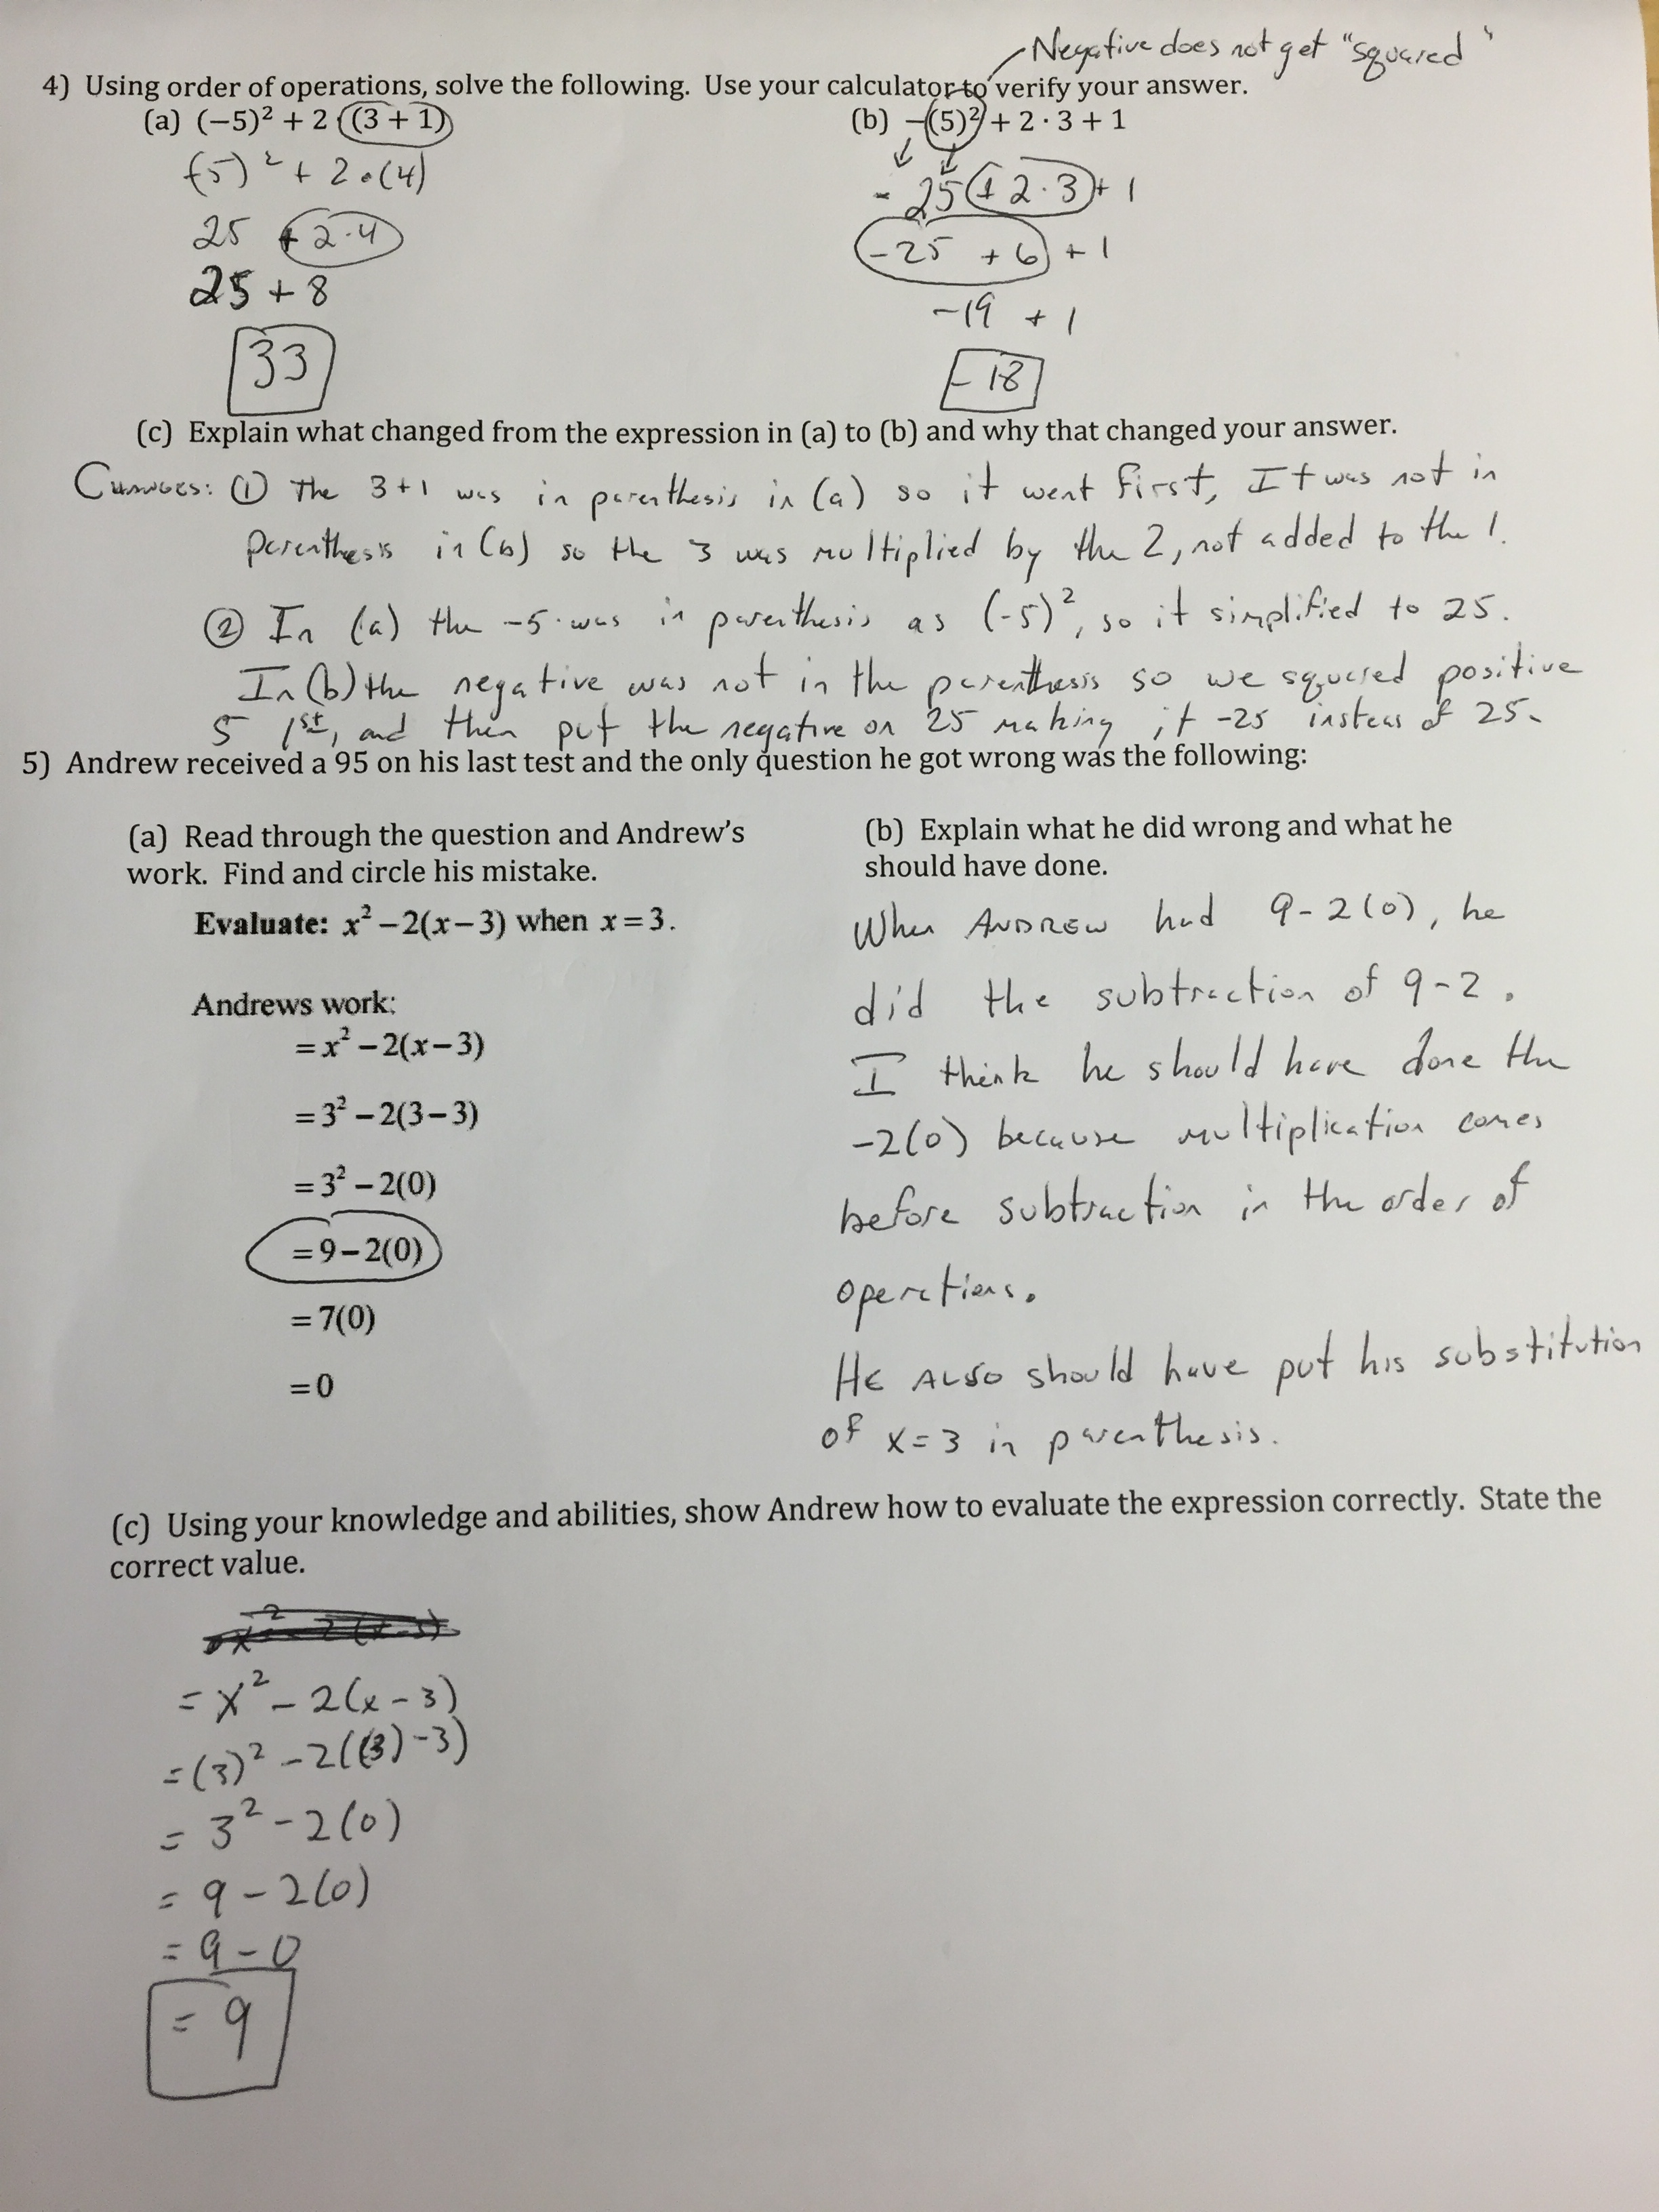 2014 Algebra 1 Winter Break Packet Answer Key 8th grade math winter